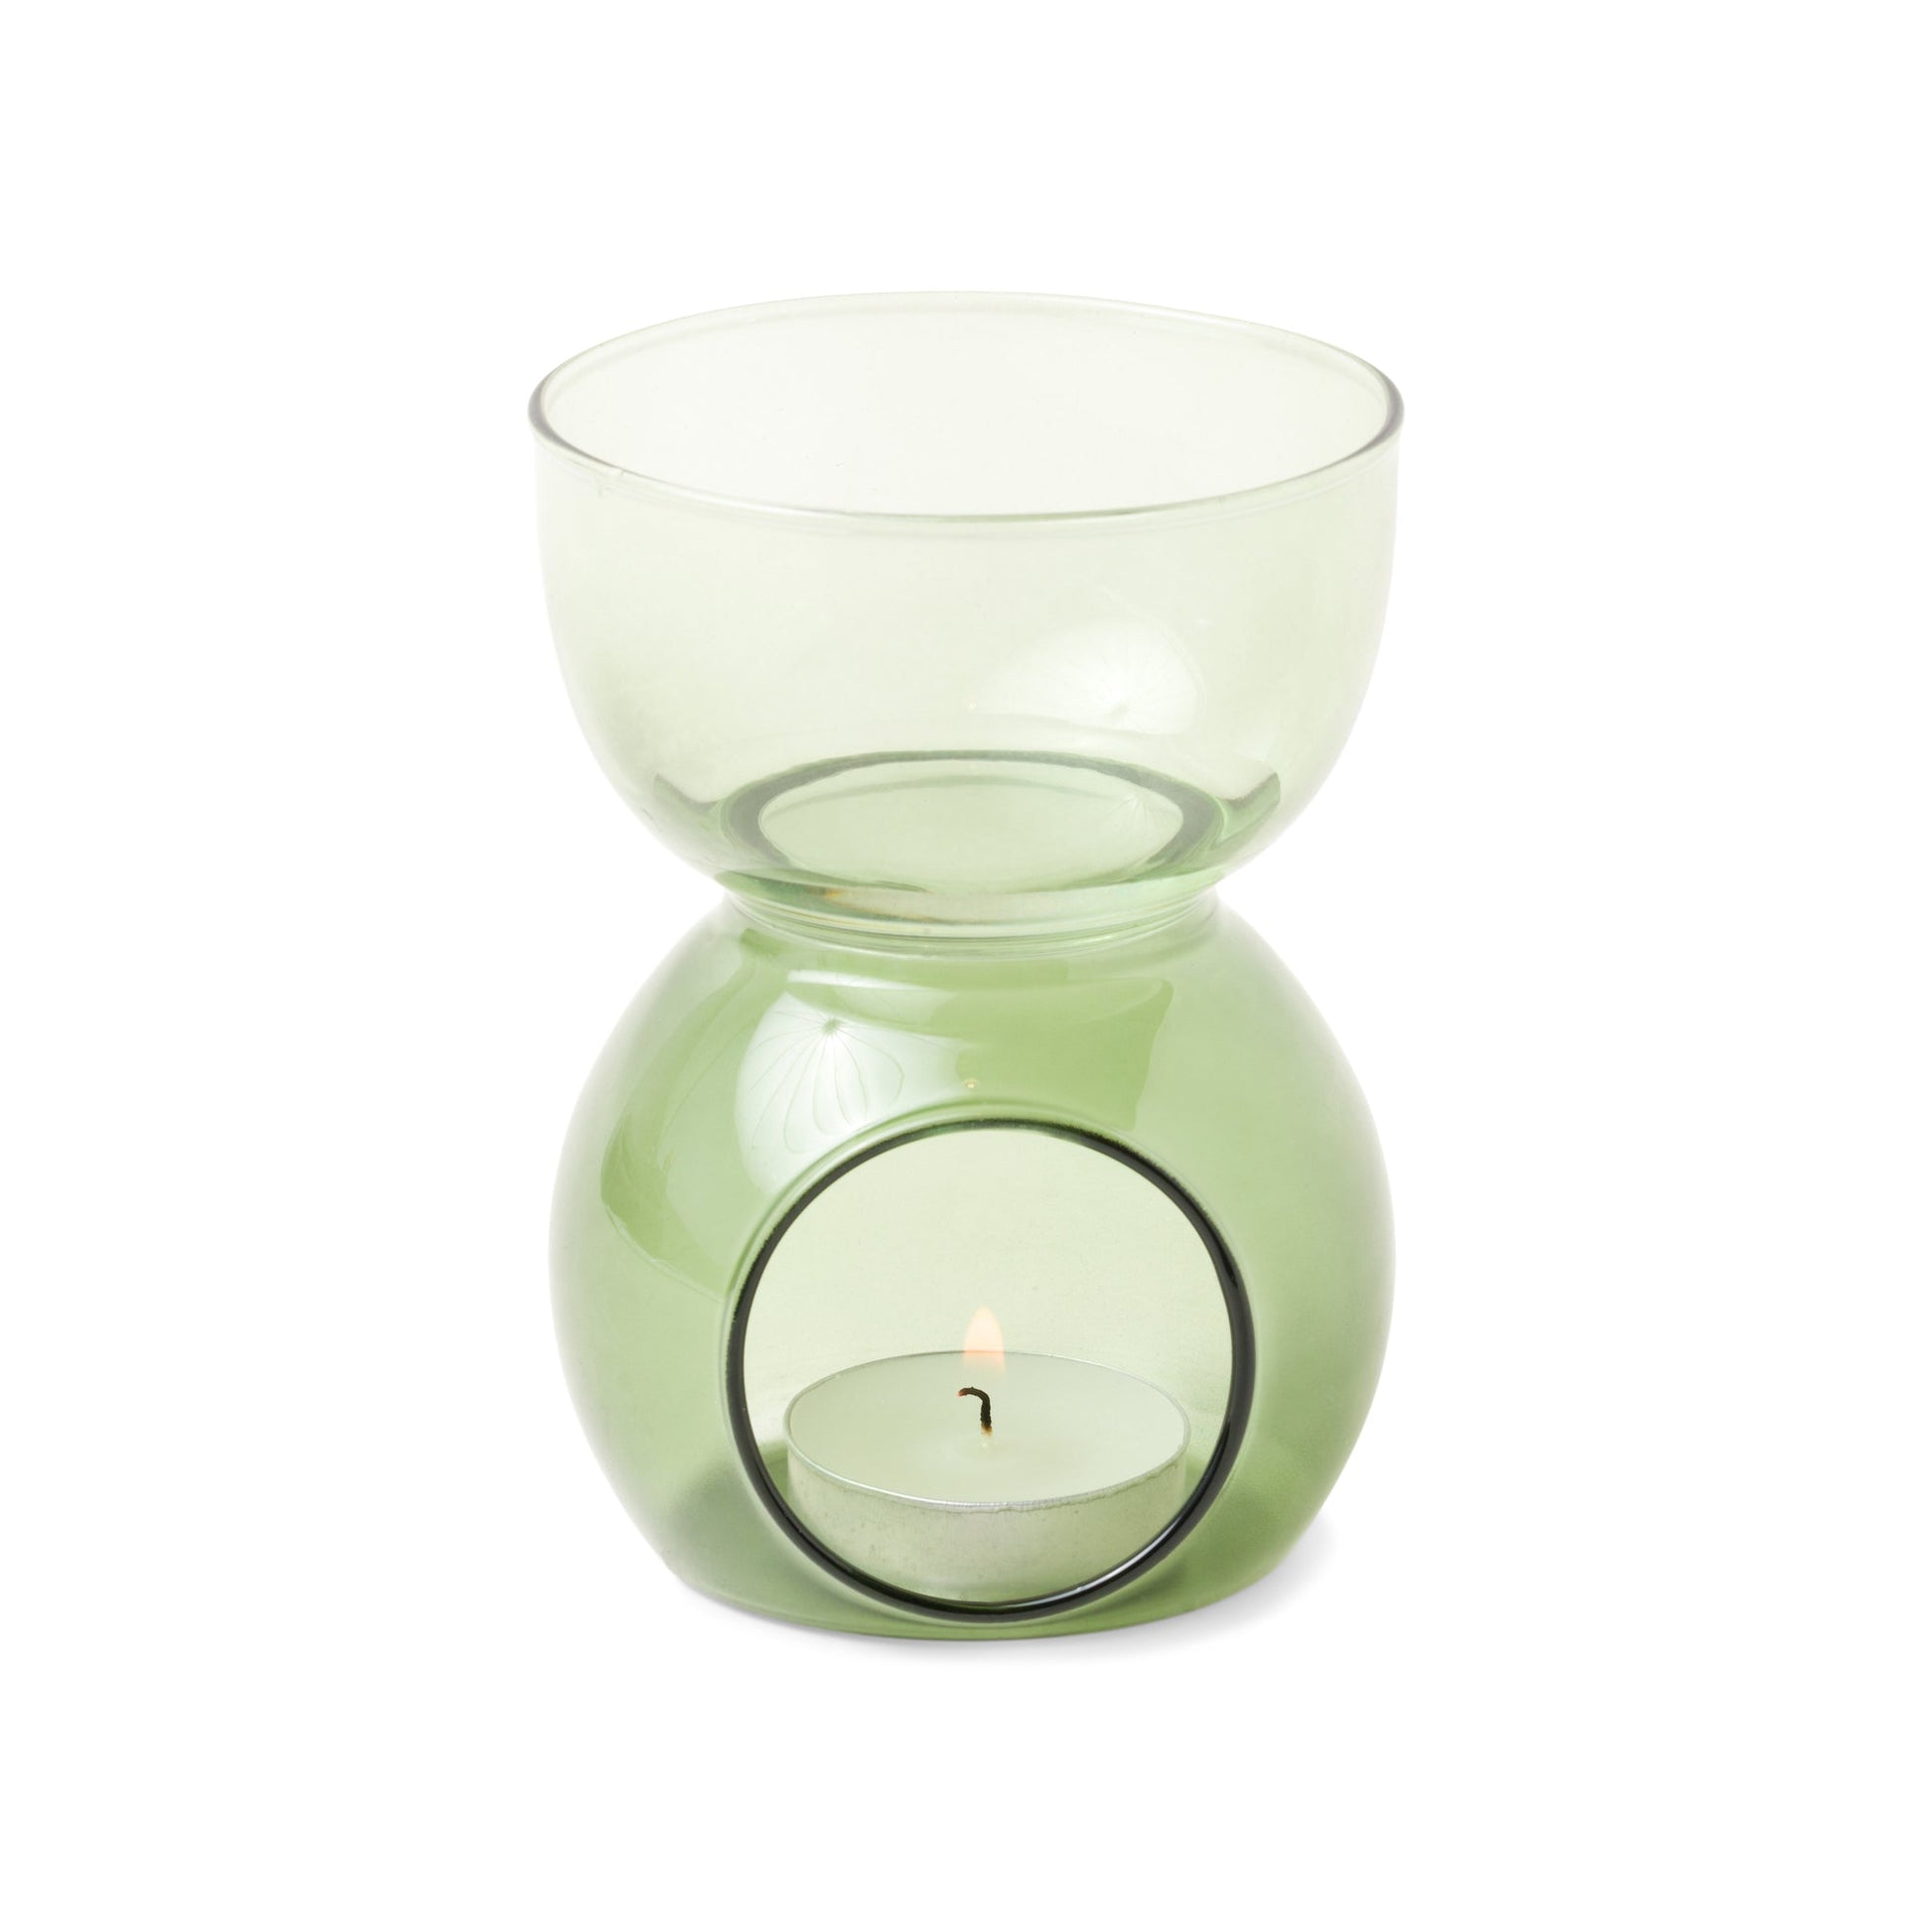 Essential Oil Burner & Tea Light Candle - Sage Green Glass